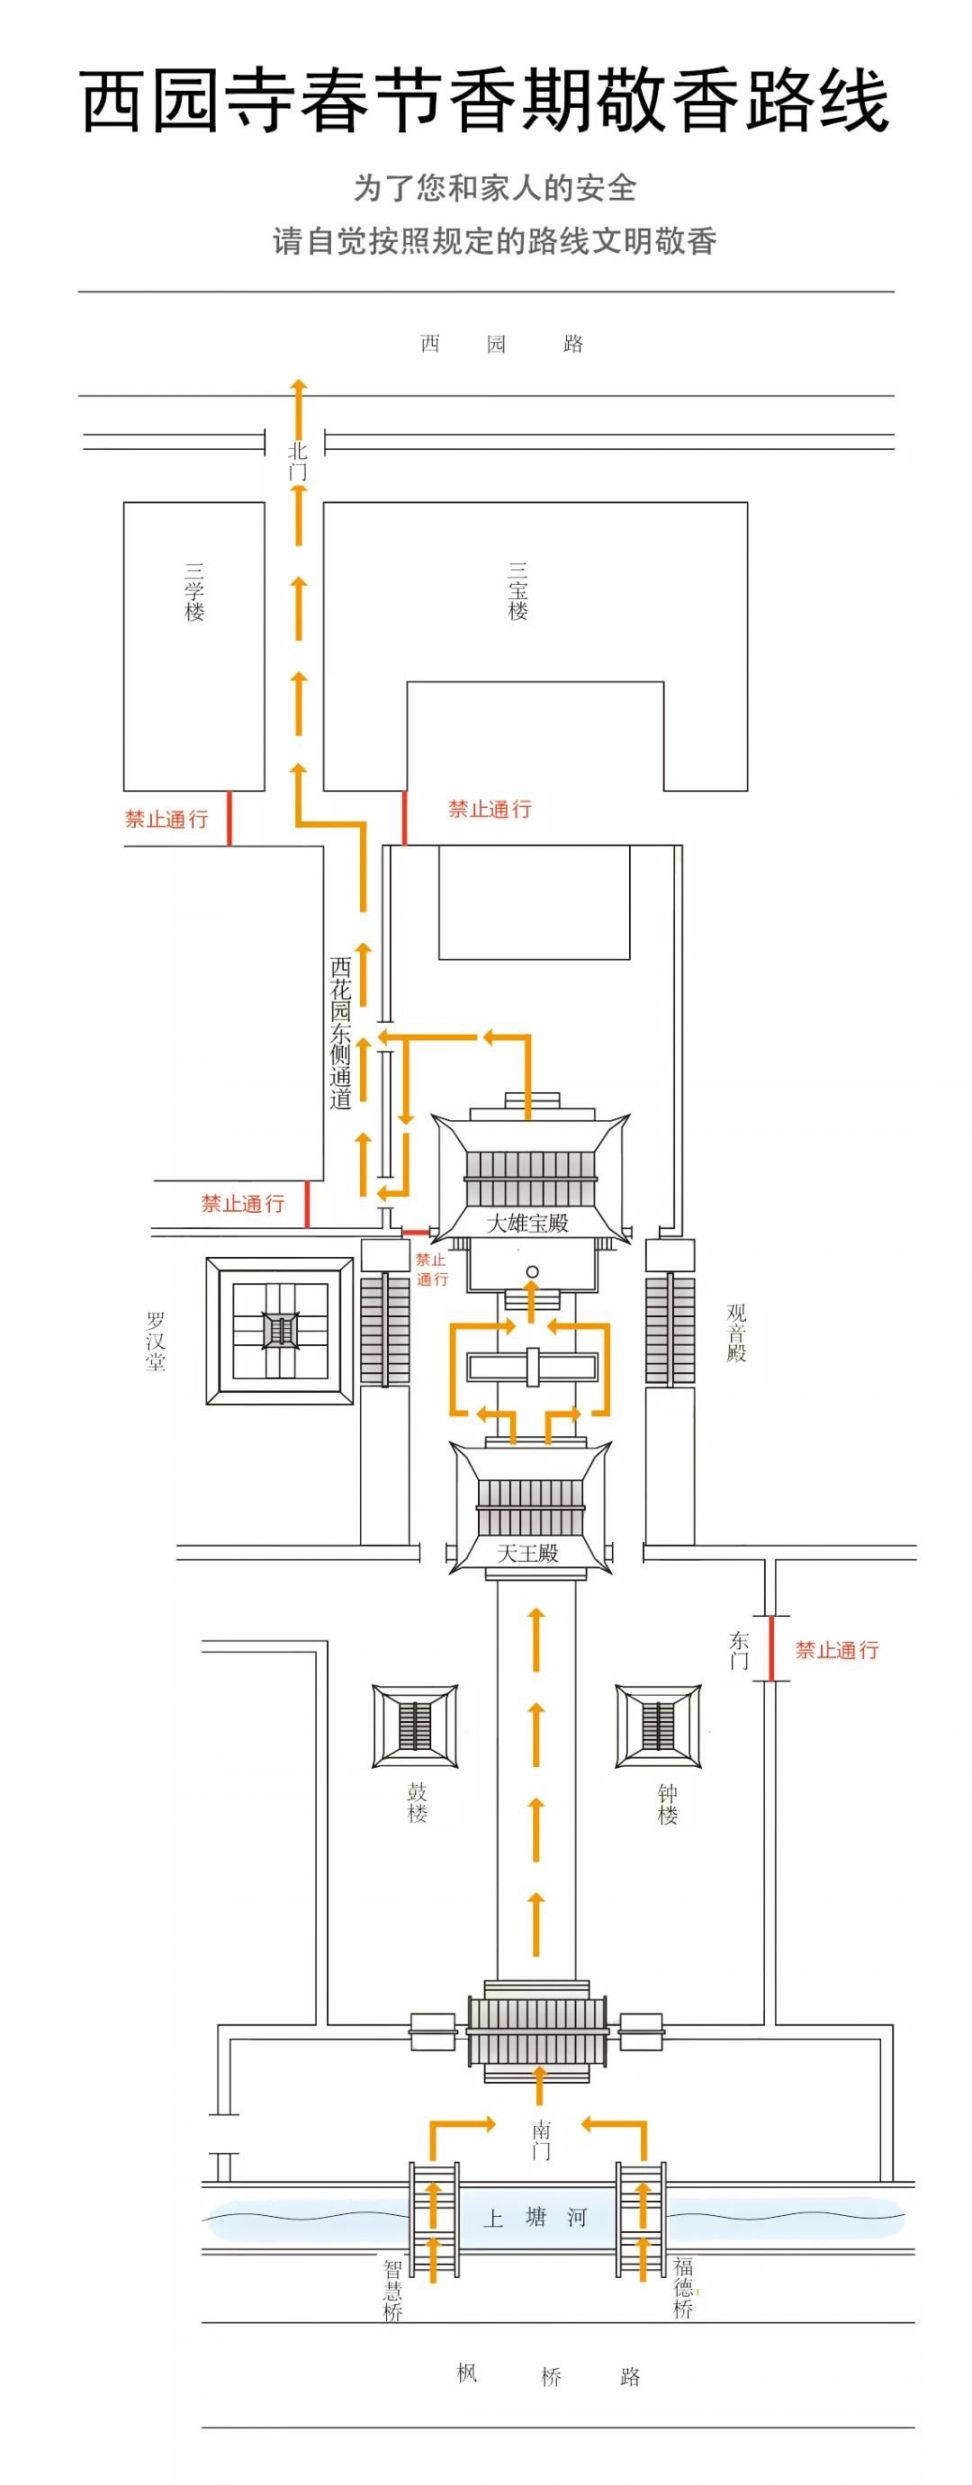 蘇州西園寺2021年春節開放時間表